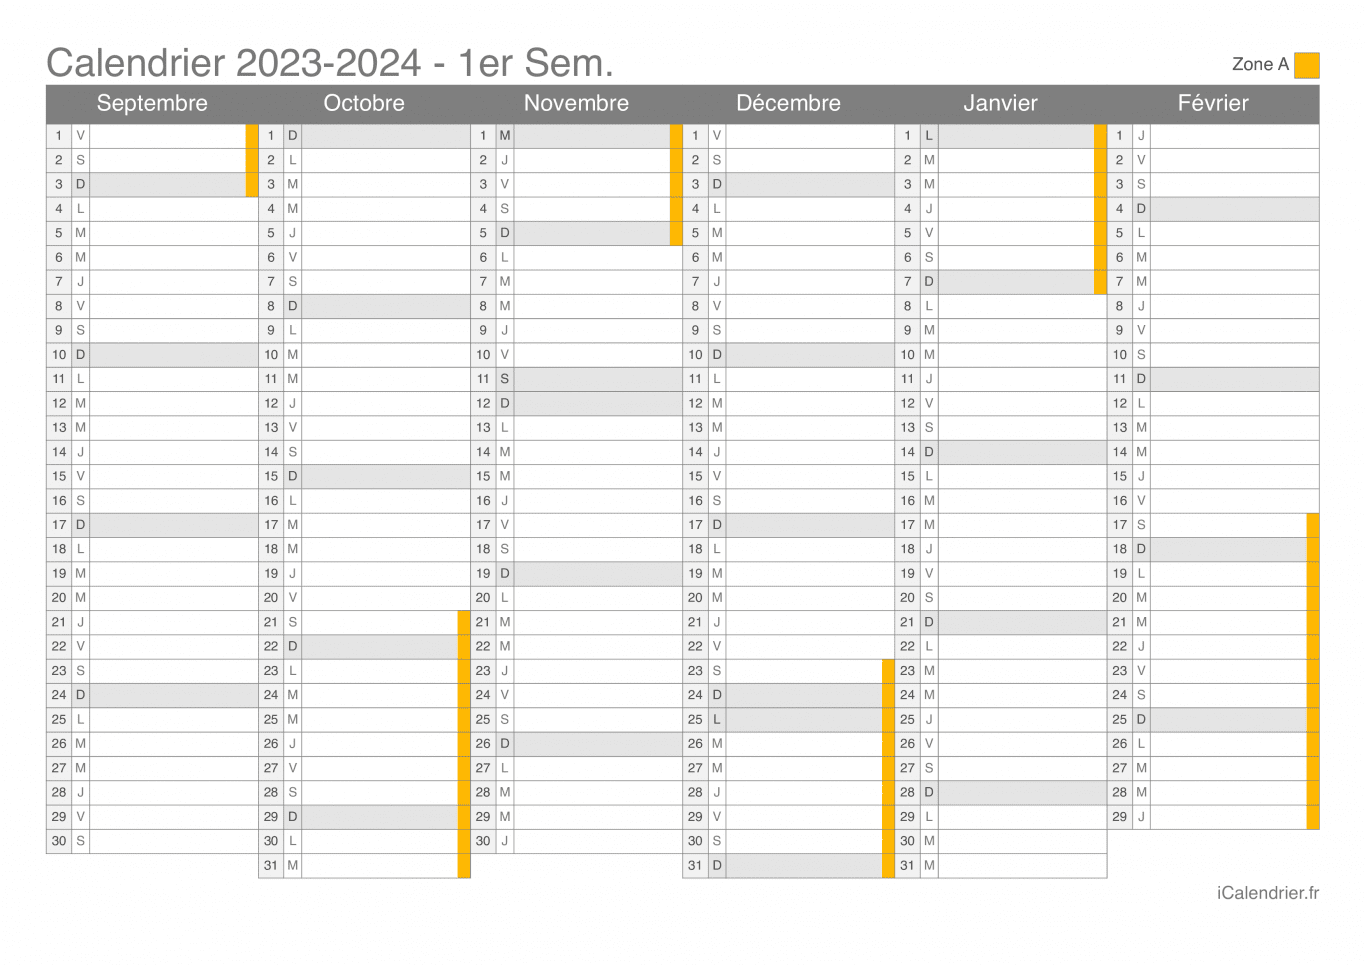 Calendrier des vacances scolaires 2023-2024 par semestre de la zone A